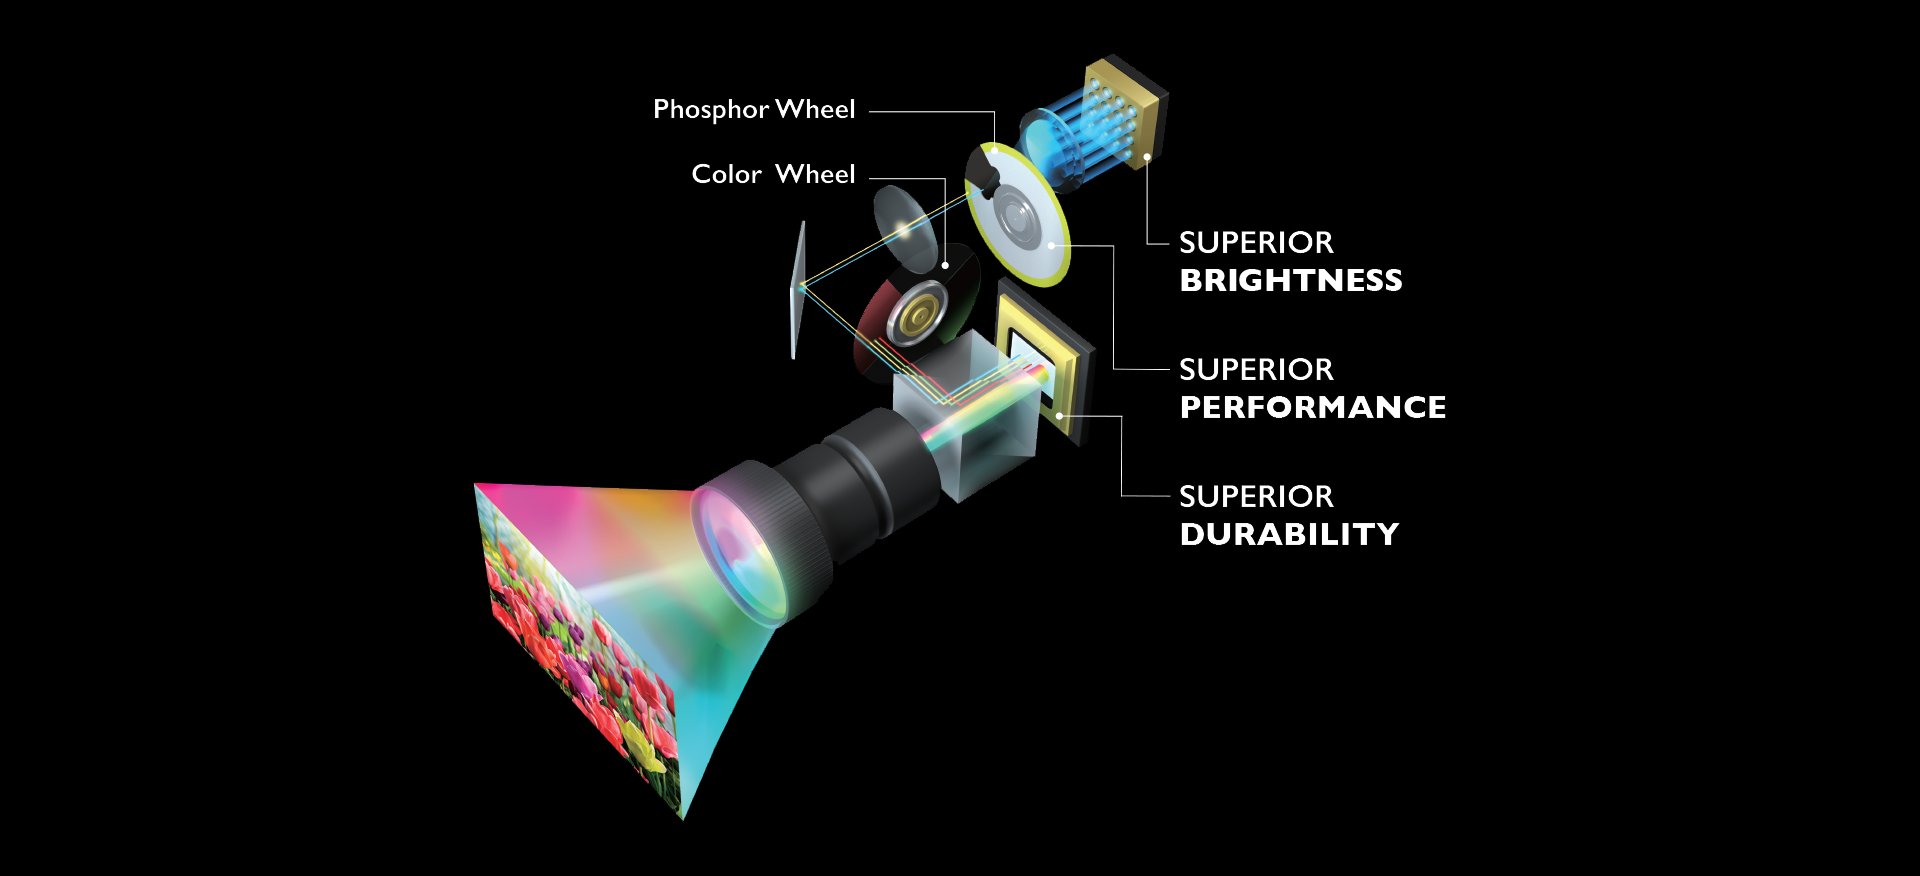 โปรเจคเตอร์สําหรับห้องประชุม BenQ LK952 4K BlueCore Laser DLP ให้ความสว่าง ประสิทธิภาพ และความทนทานที่เหนือกว่า